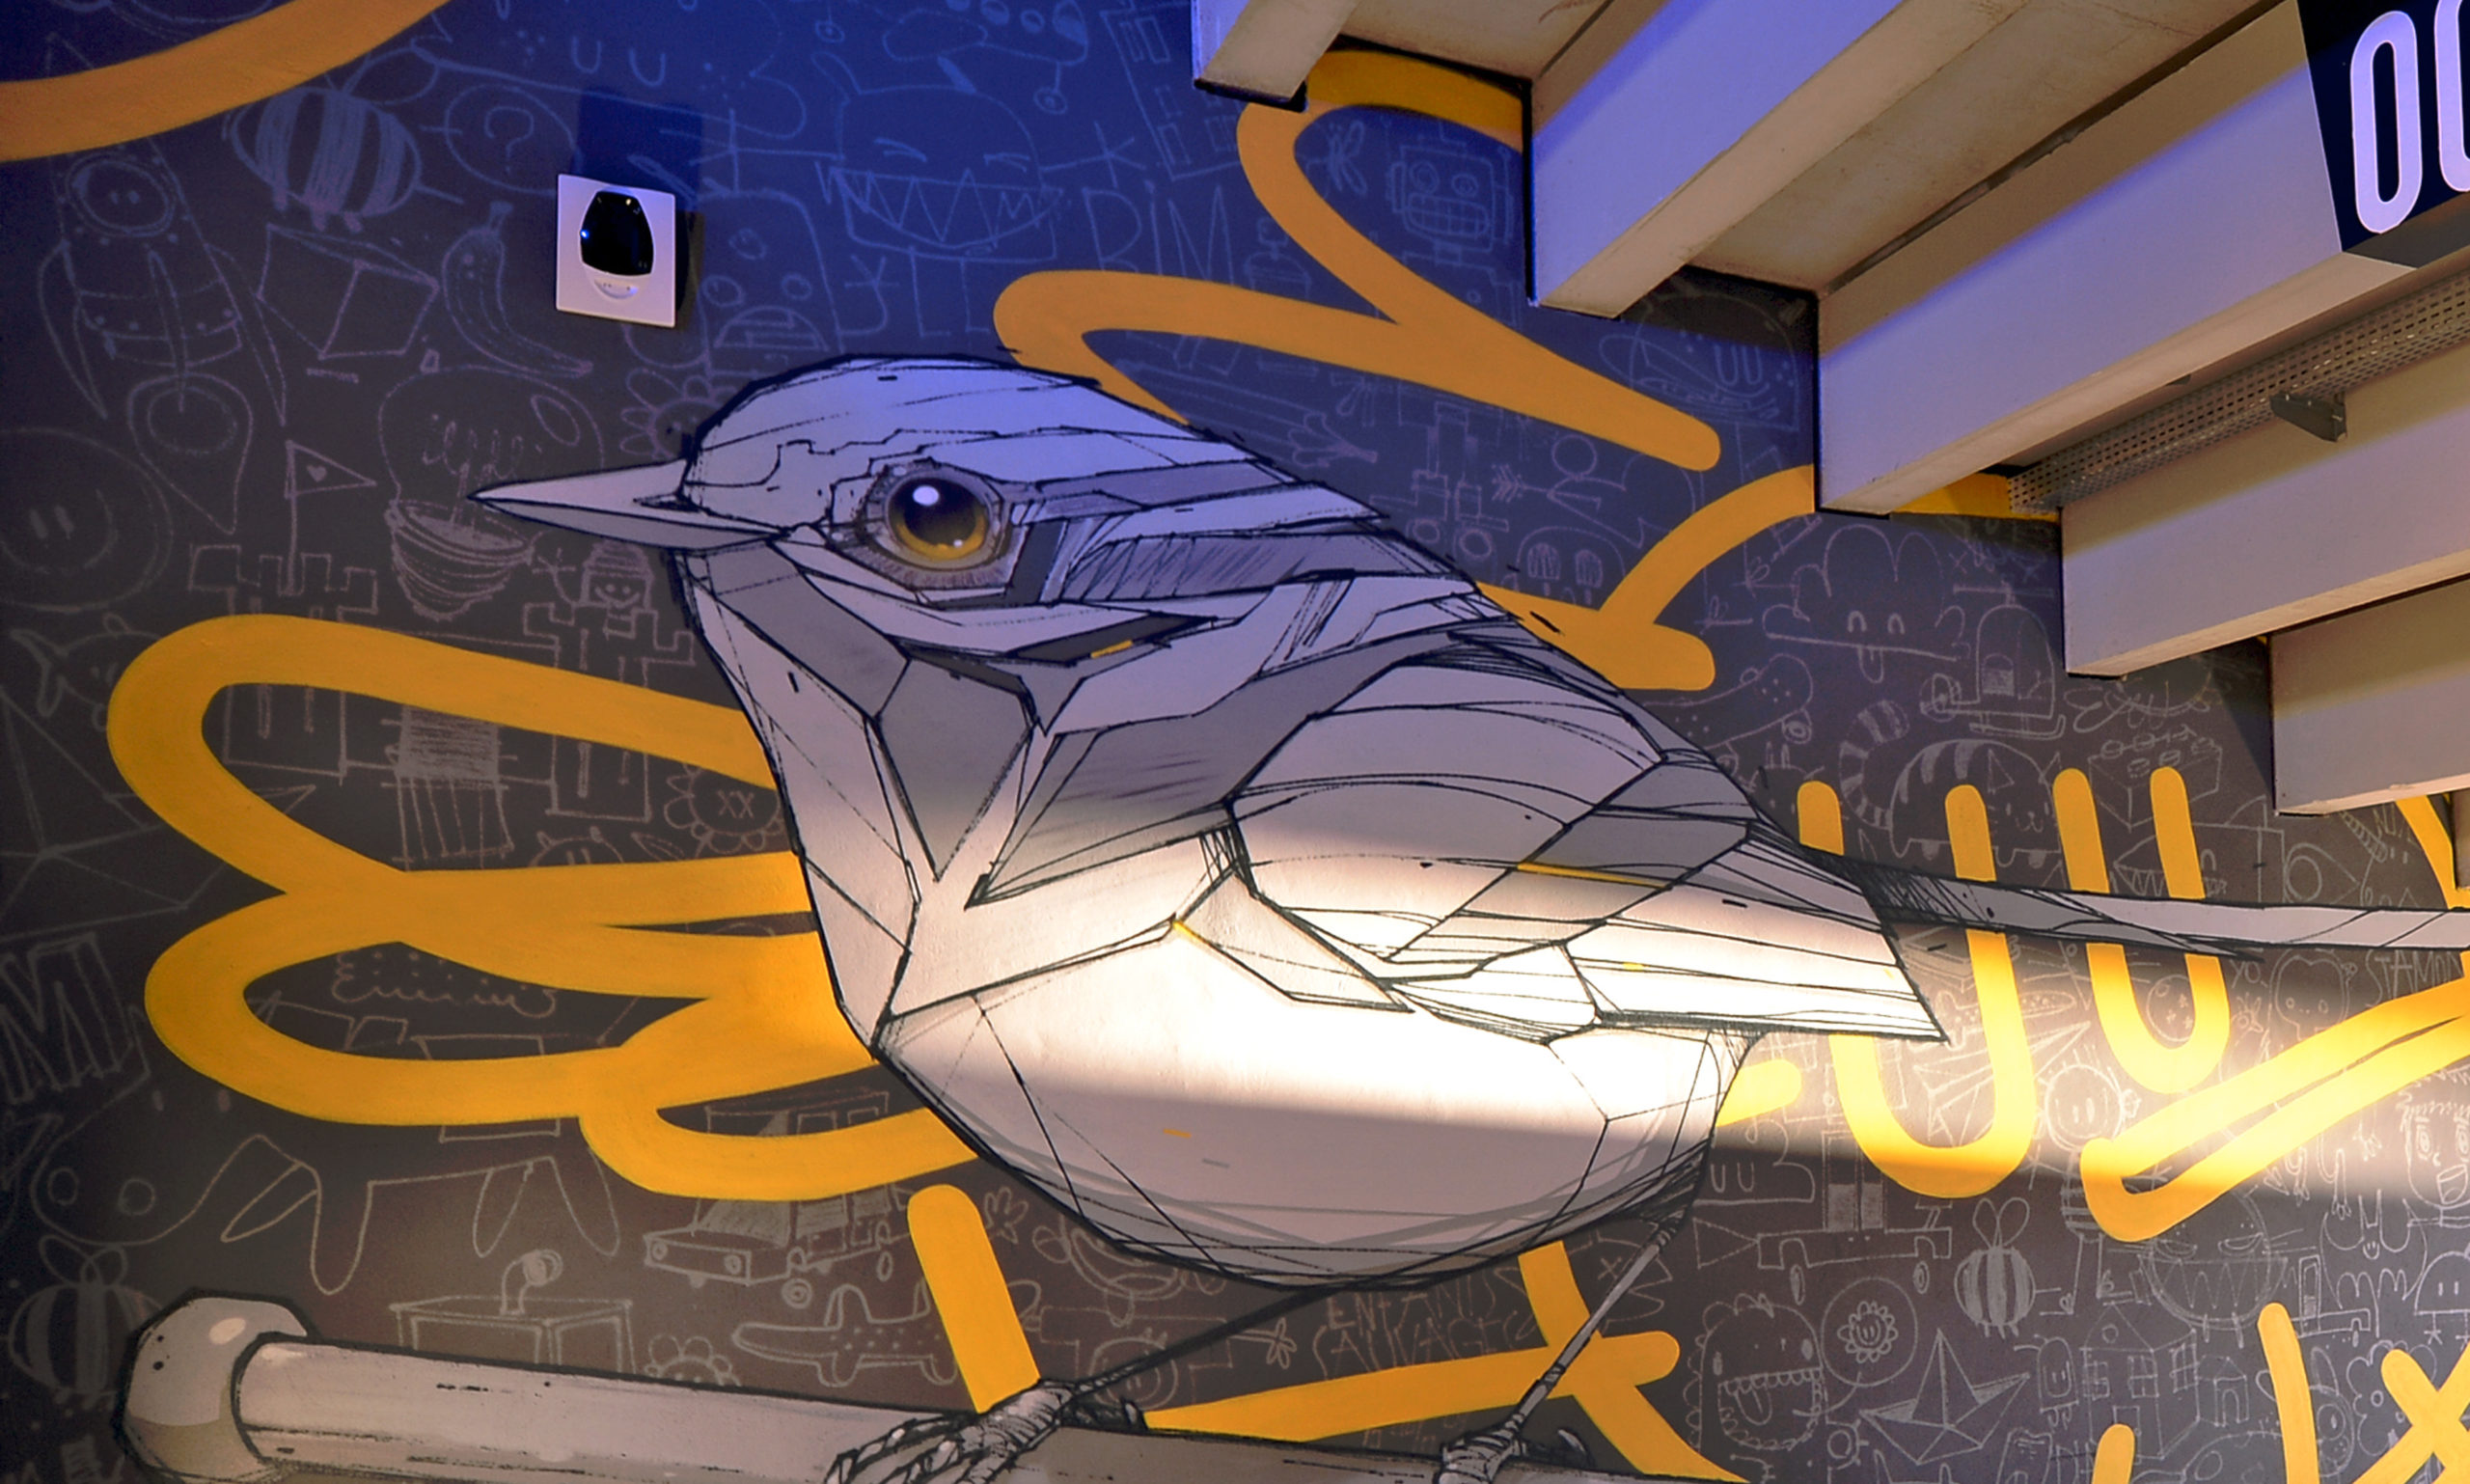 Mur du Groupama Stadium recouvert d'une oeuvre de street art représentant un oiseau